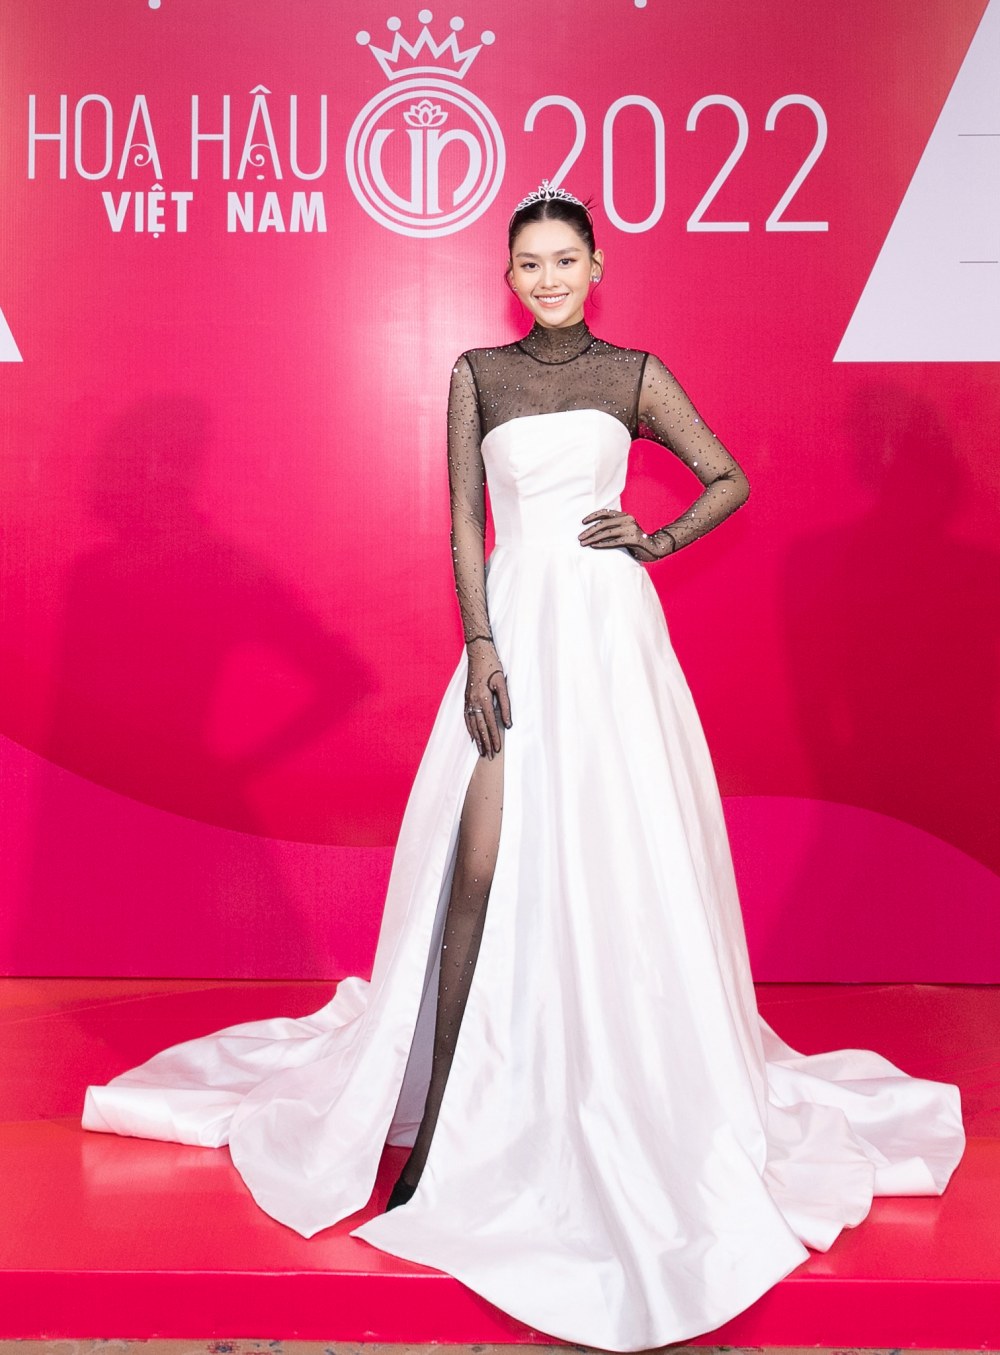 Đỗ Hà khoe đôi chân dài 1,11m tại sự kiện khởi động Hoa hậu Việt Nam 2022 - 6